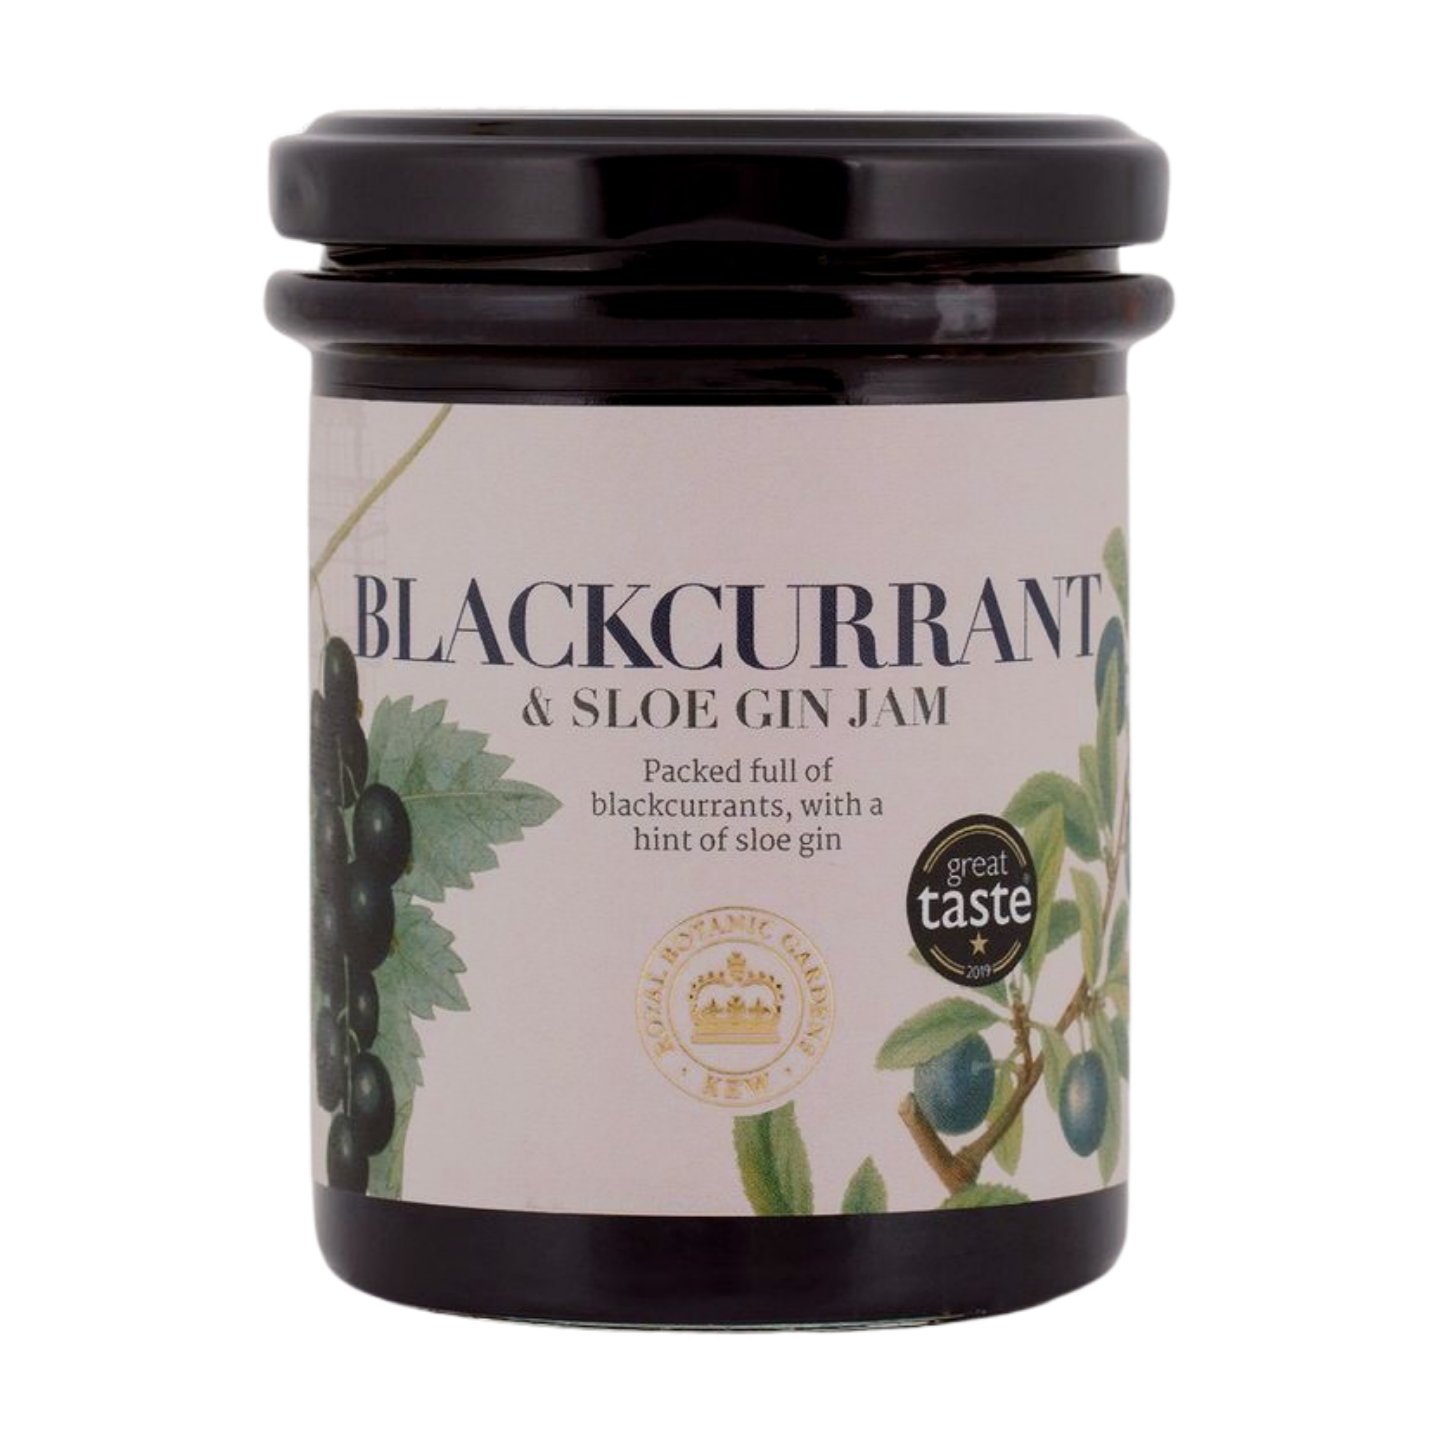 RBG Kew Blackcurrant & Sloe Gin Jam (225g)